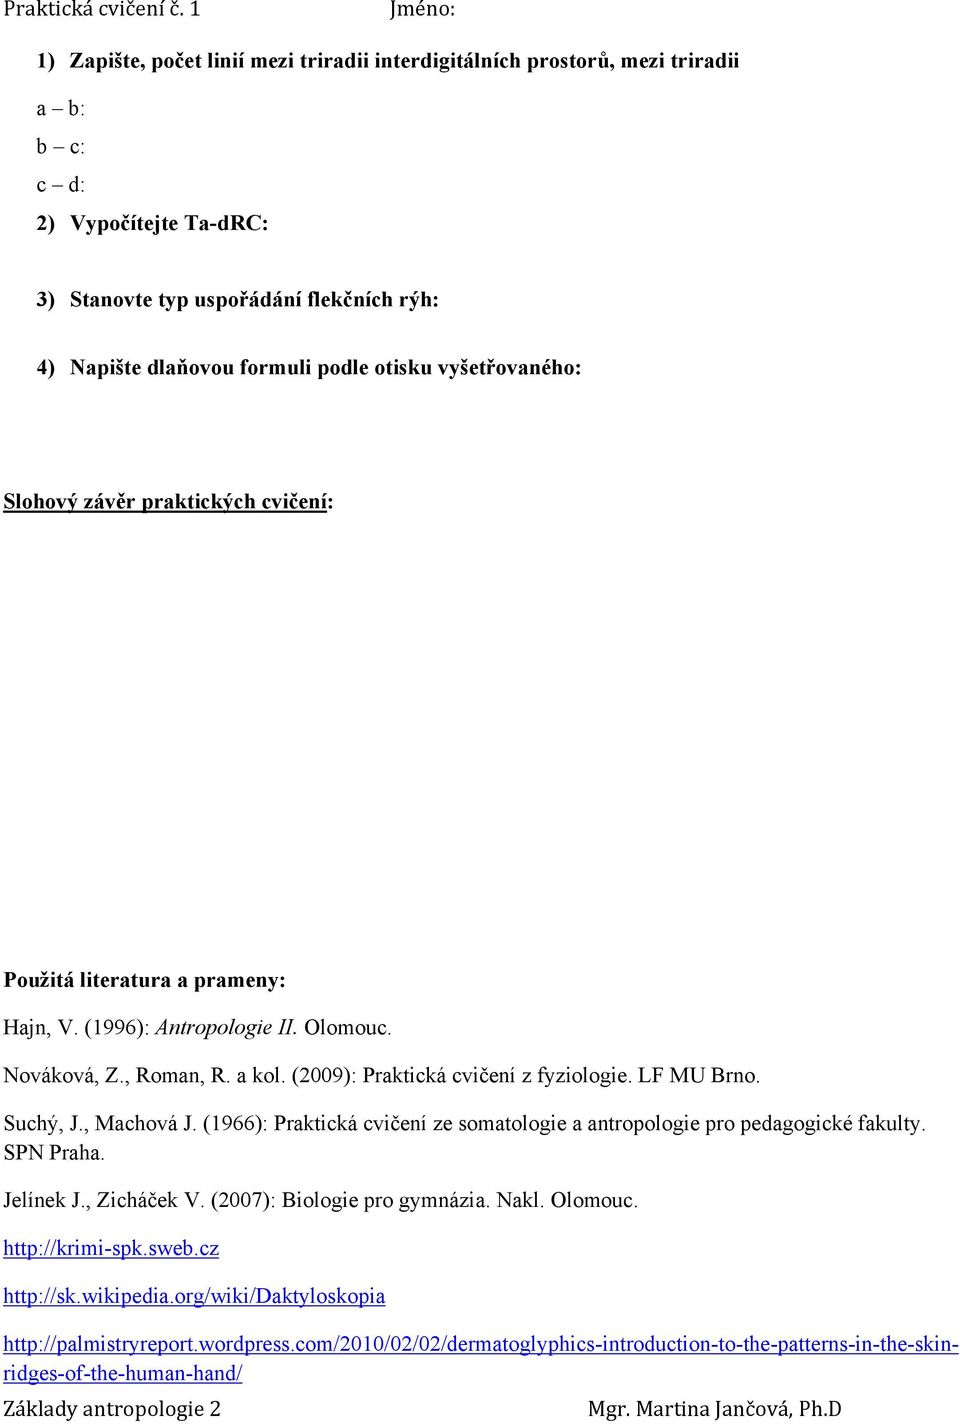 (2009): Praktická cvičení z fyziologie. LF MU Brno. Suchý, J., Machová J. (1966): Praktická cvičení ze somatologie a antropologie pro pedagogické fakulty. SPN Praha. Jelínek J., Zicháček V.